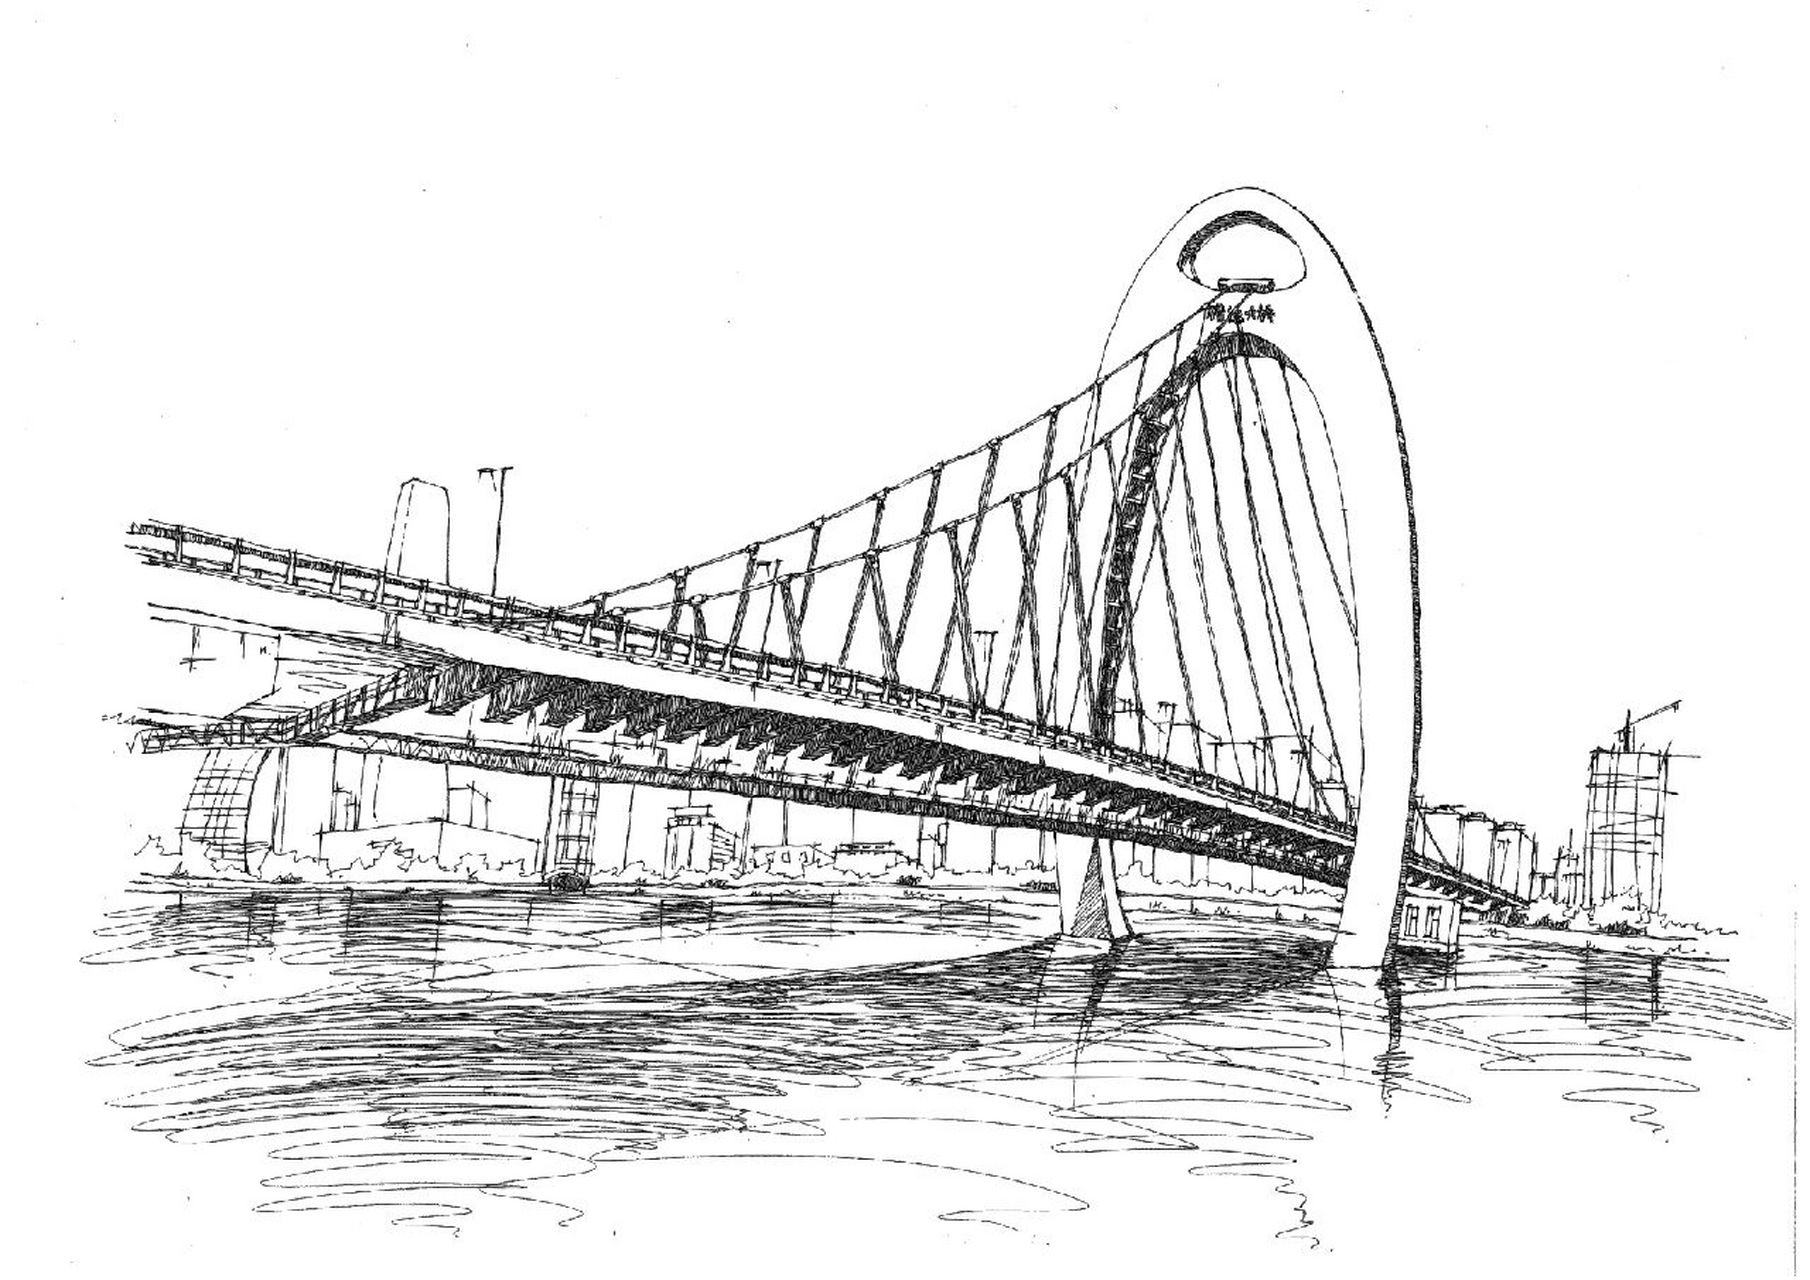 大桥简笔画手绘图片